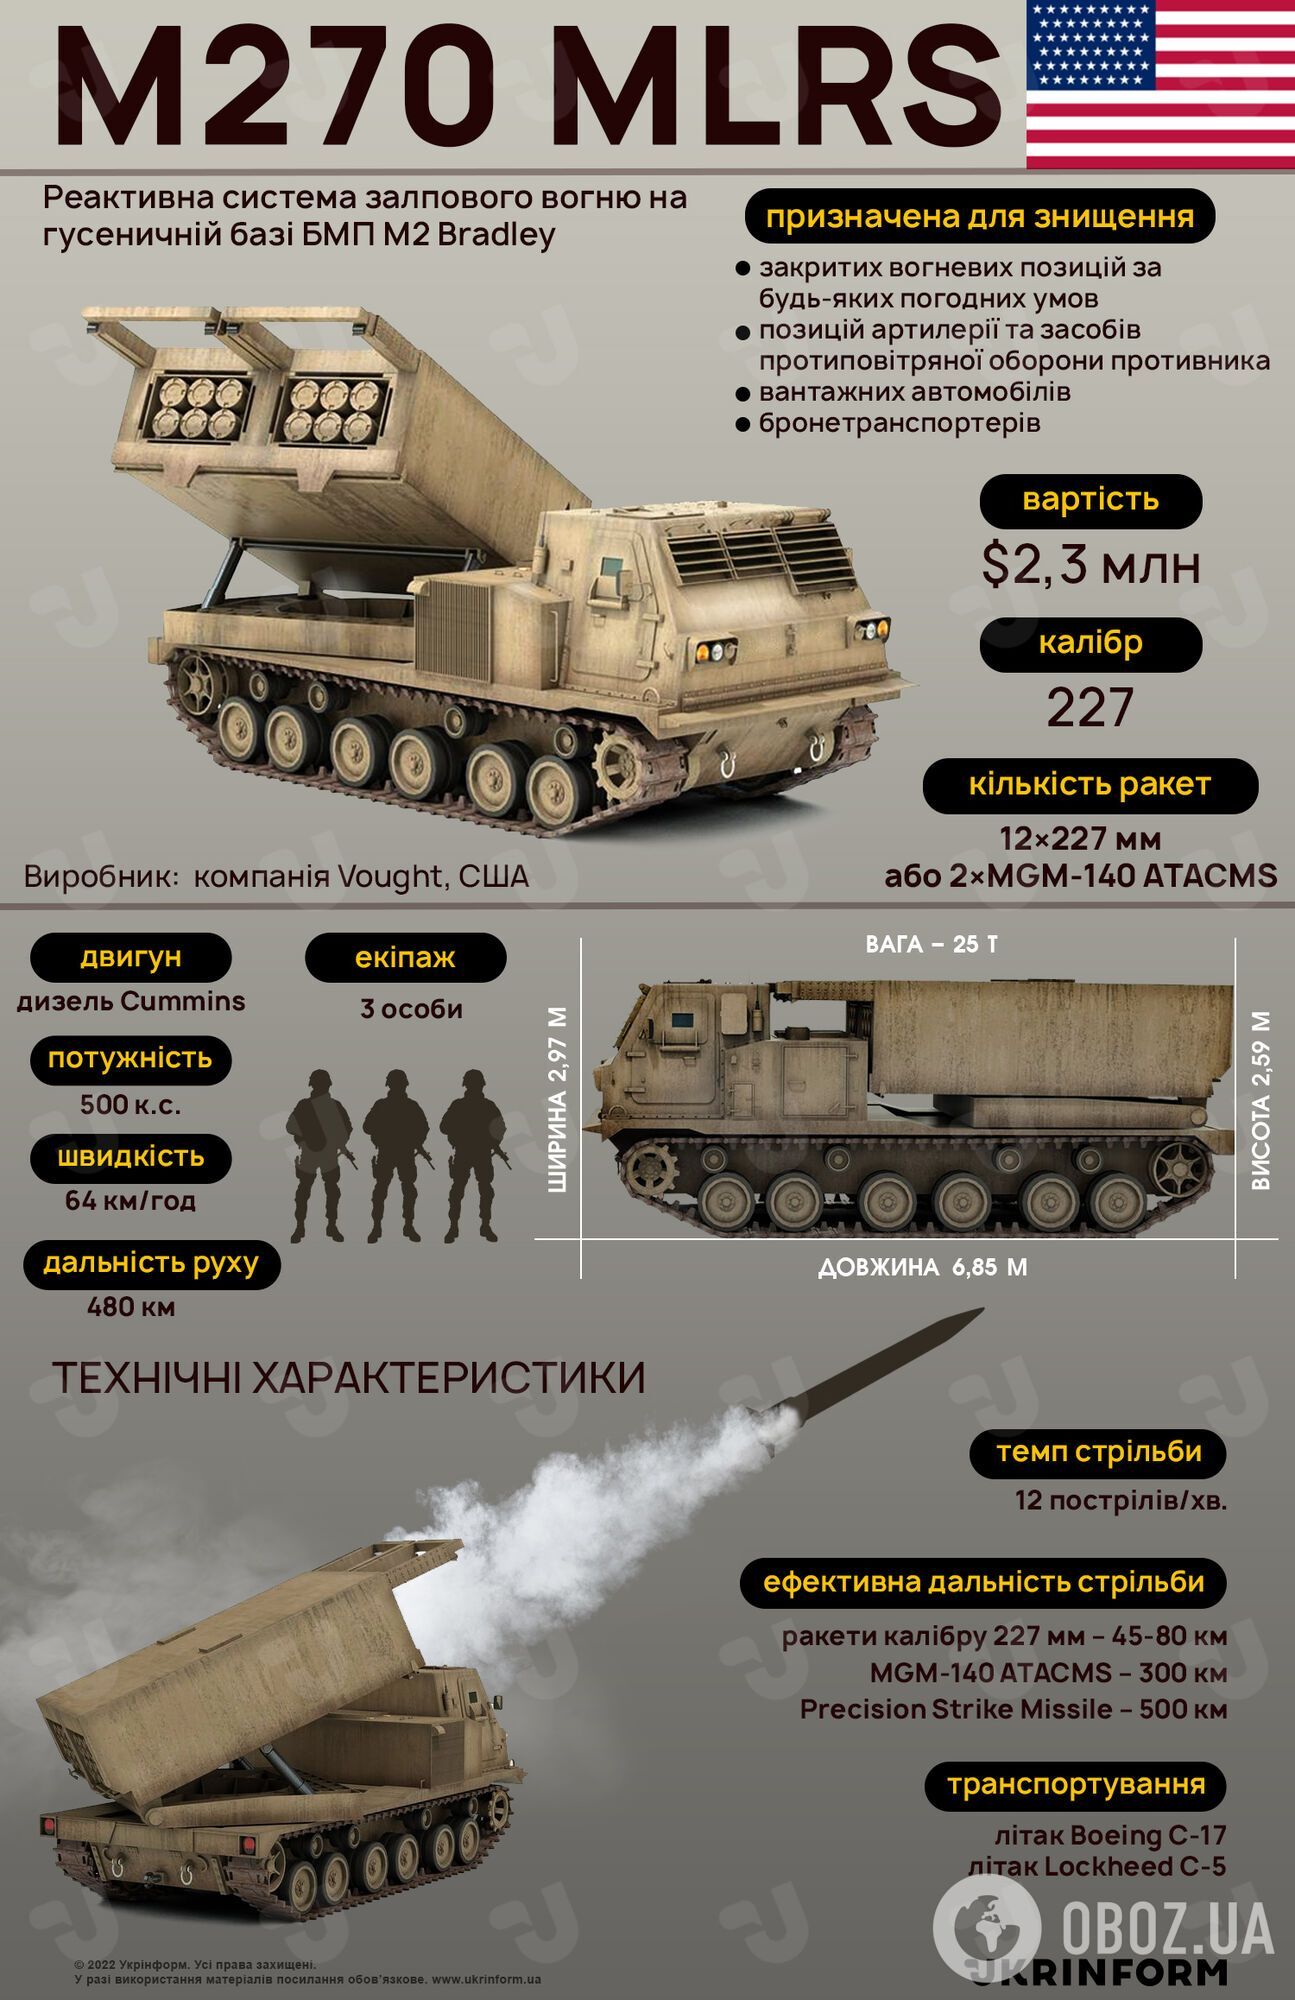 В Украину прибыли первые M270 MLRS